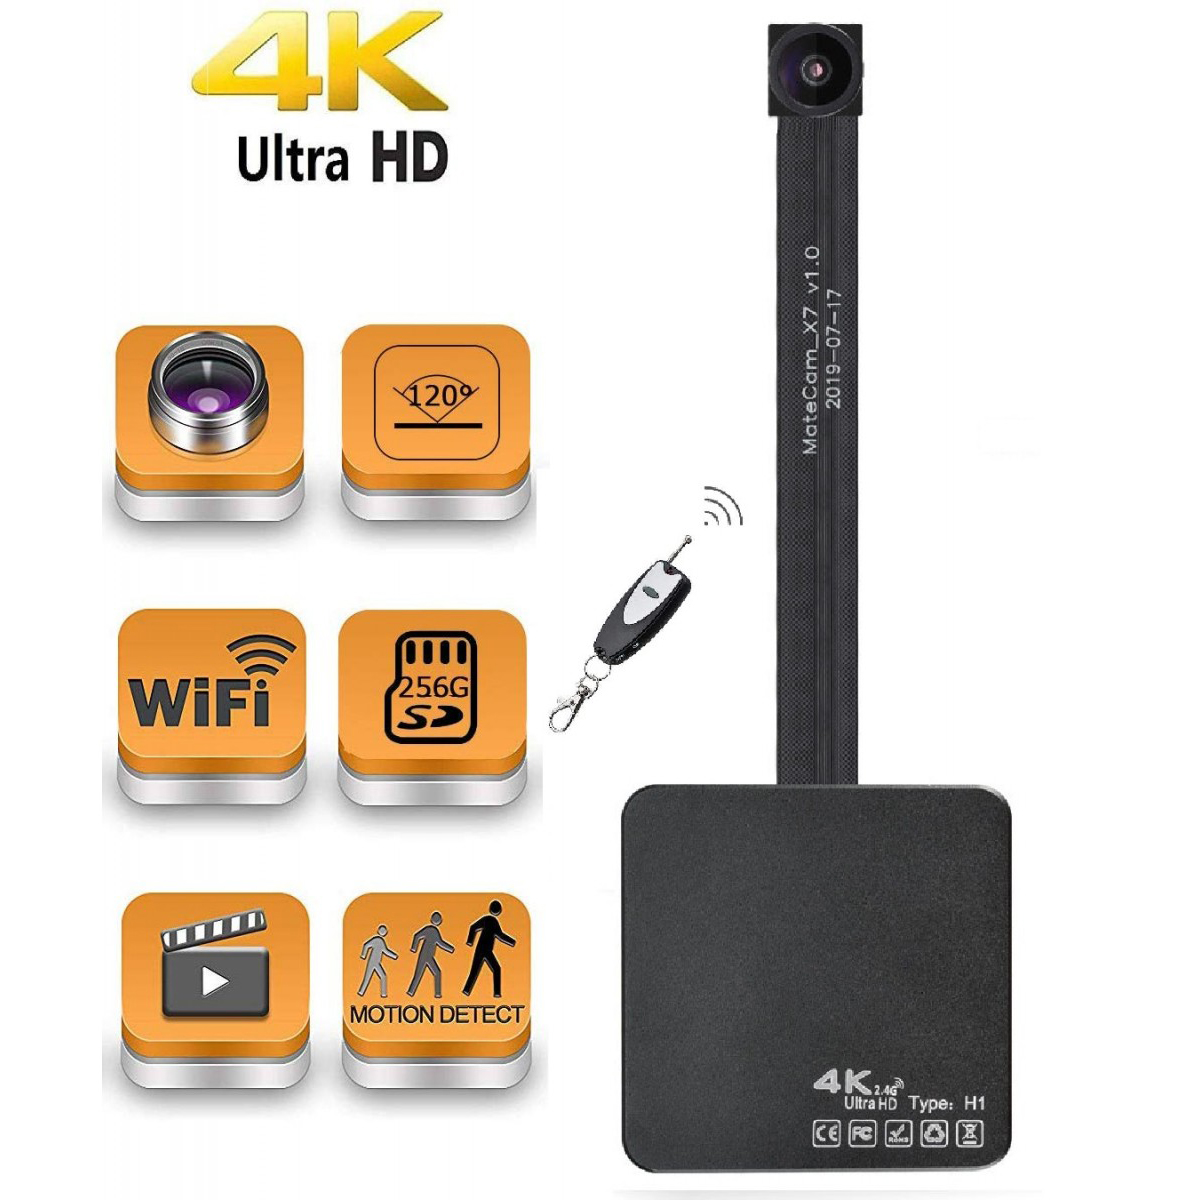 Φακός 4K 120° Real Ultra HD WiFi Hidden Spy Camera Mini Camera Φορητή ασύρματη βιντεοκάμερα Εγγραφή βίντεο με ανίχνευση κίνησης Nanny Cam για παρακολούθηση οικιακής ασφάλειας έως 400 GB